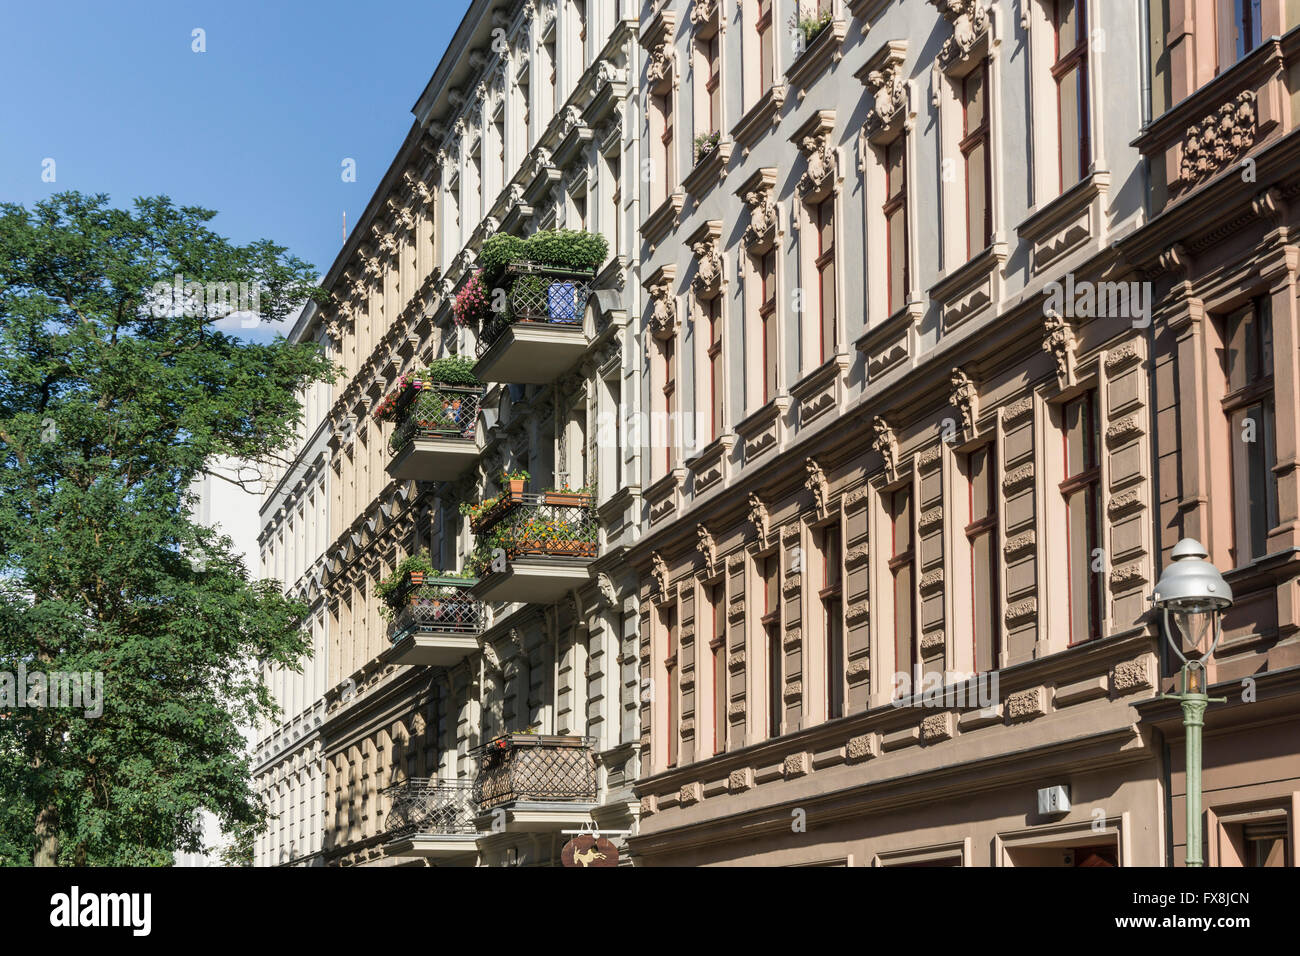 L'architecture de style wilhelmien, façade, Seelingstrasse, Charlottenburg, Berlin Banque D'Images